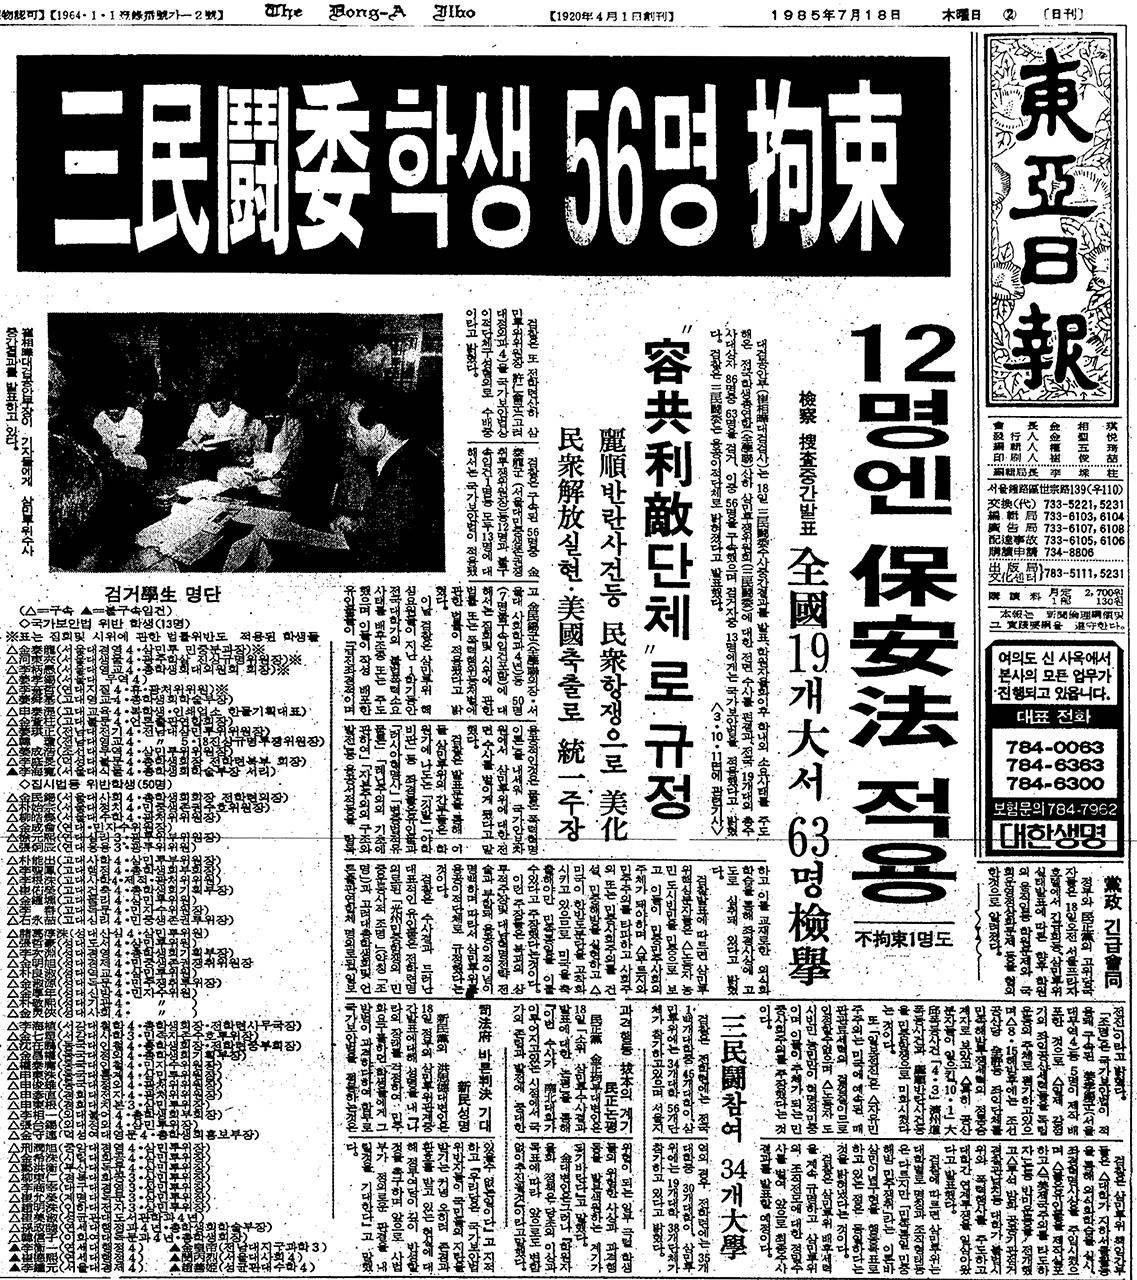 1985년 7월 18일, 대검 공안부는 삼민투를 용공 이적 단체로 규정하고 주도자를 대량 구속한다는 발표를 했다.  